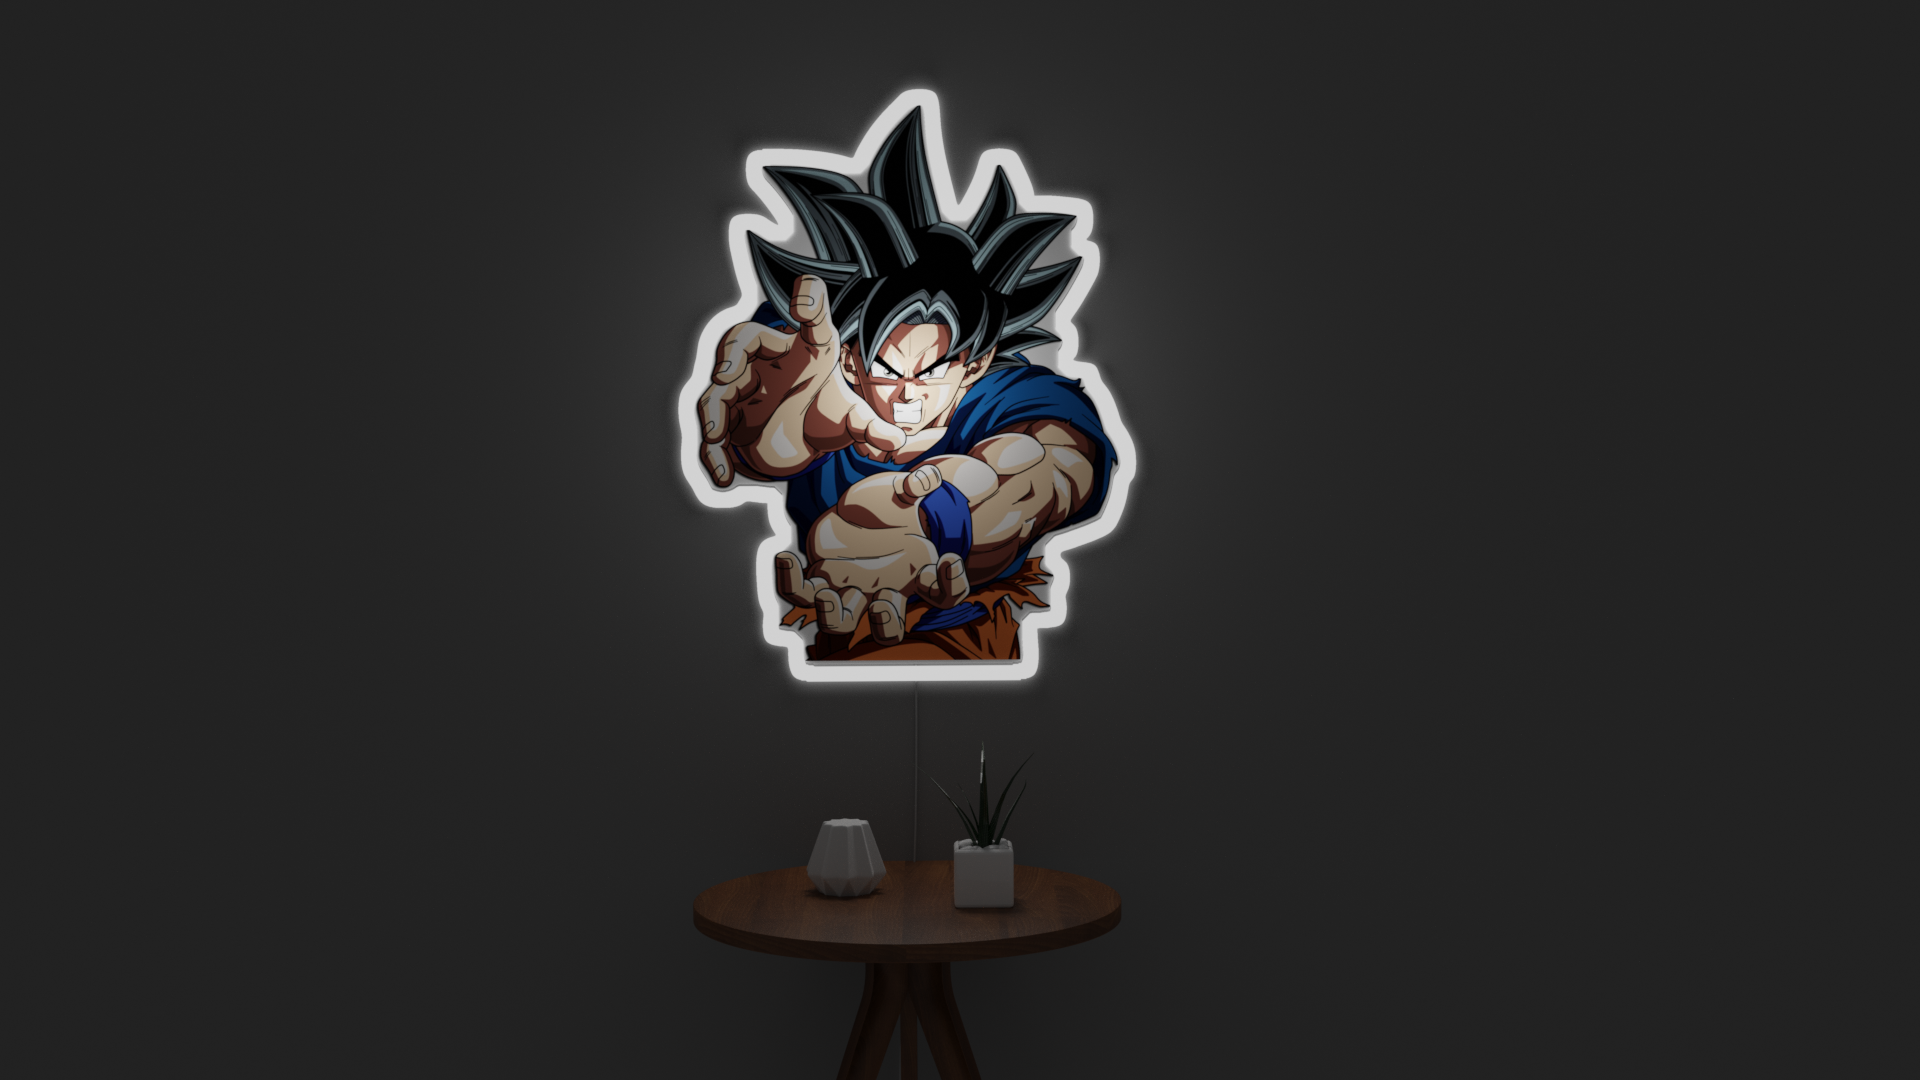 Goku UTRA instinctive Light LED NEON LIGHT